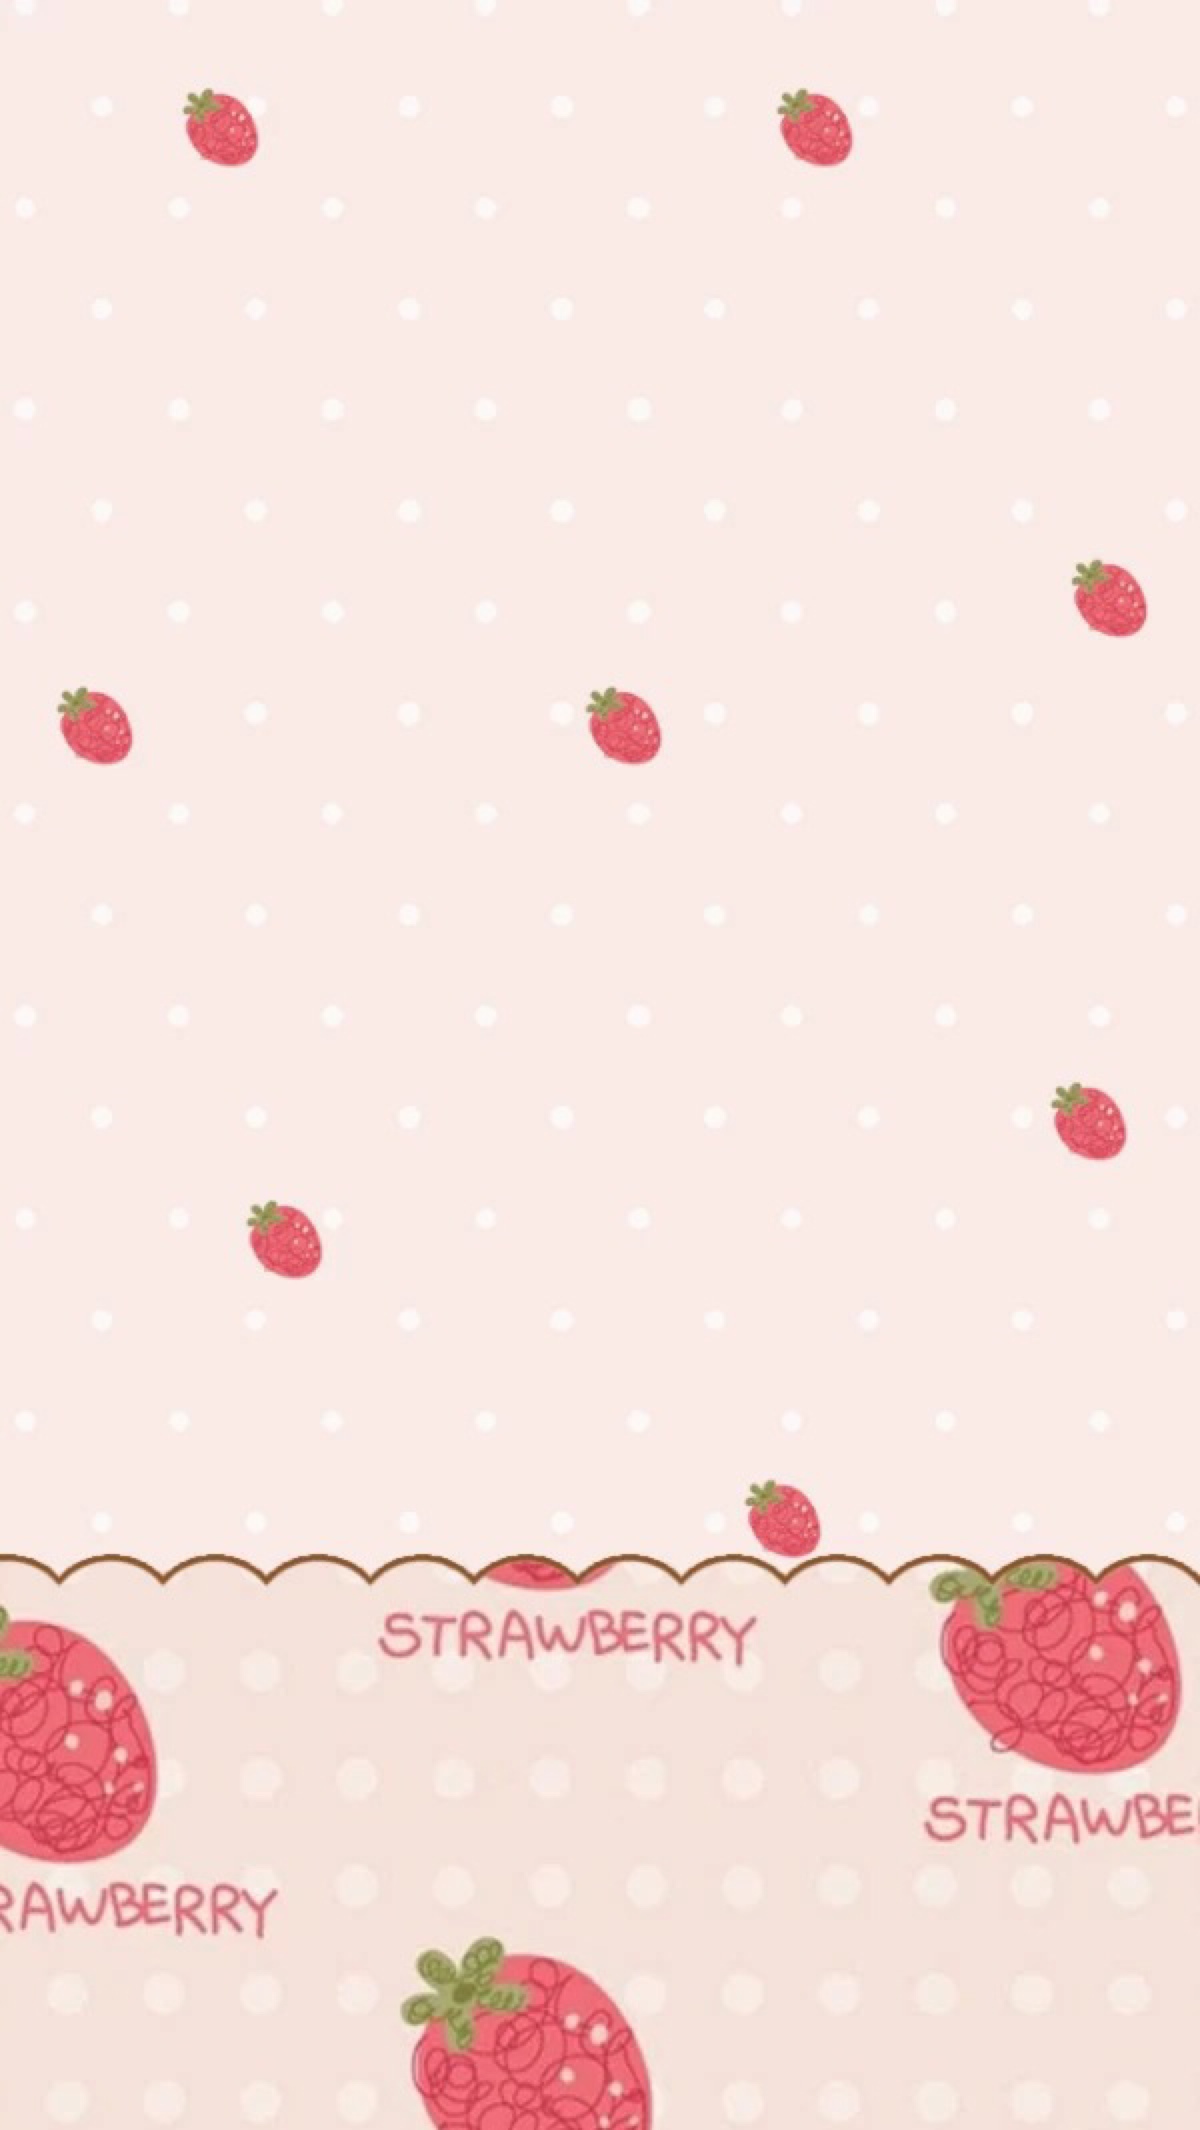 草莓聊天背景图微信图片